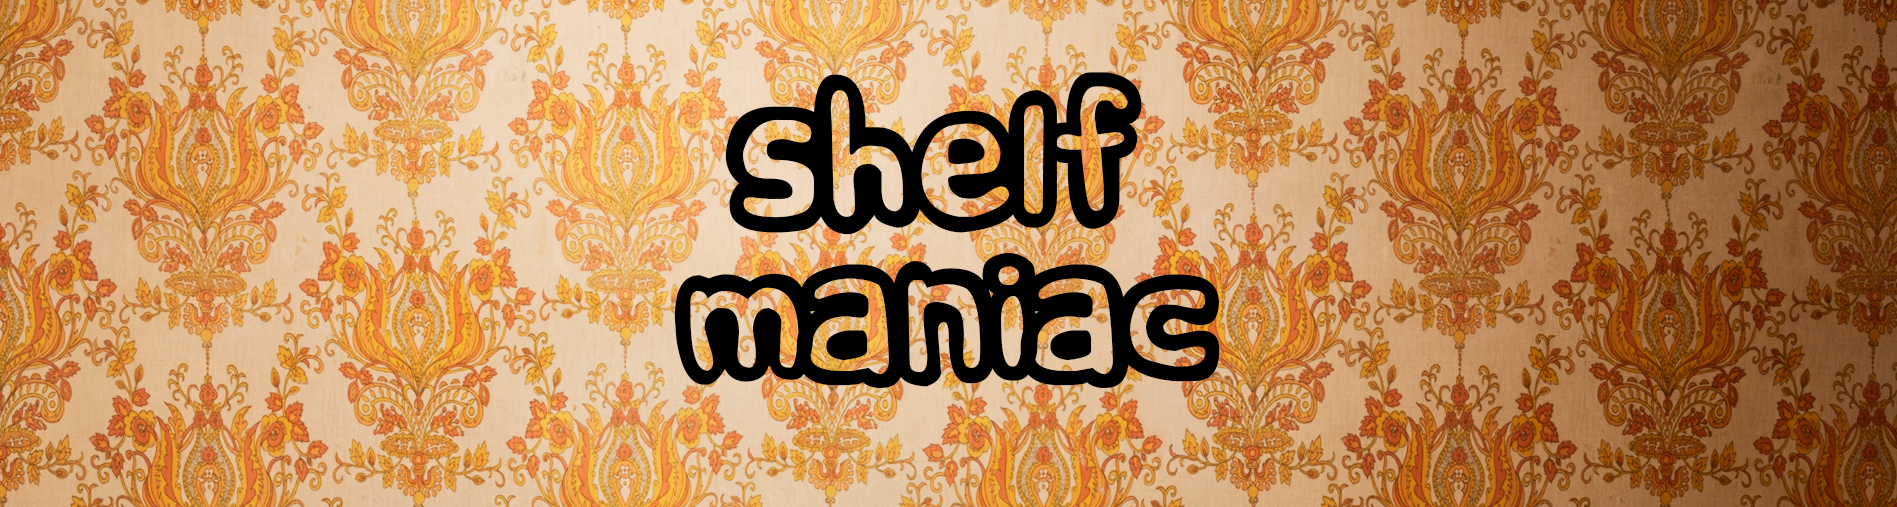 Shelf Maniac